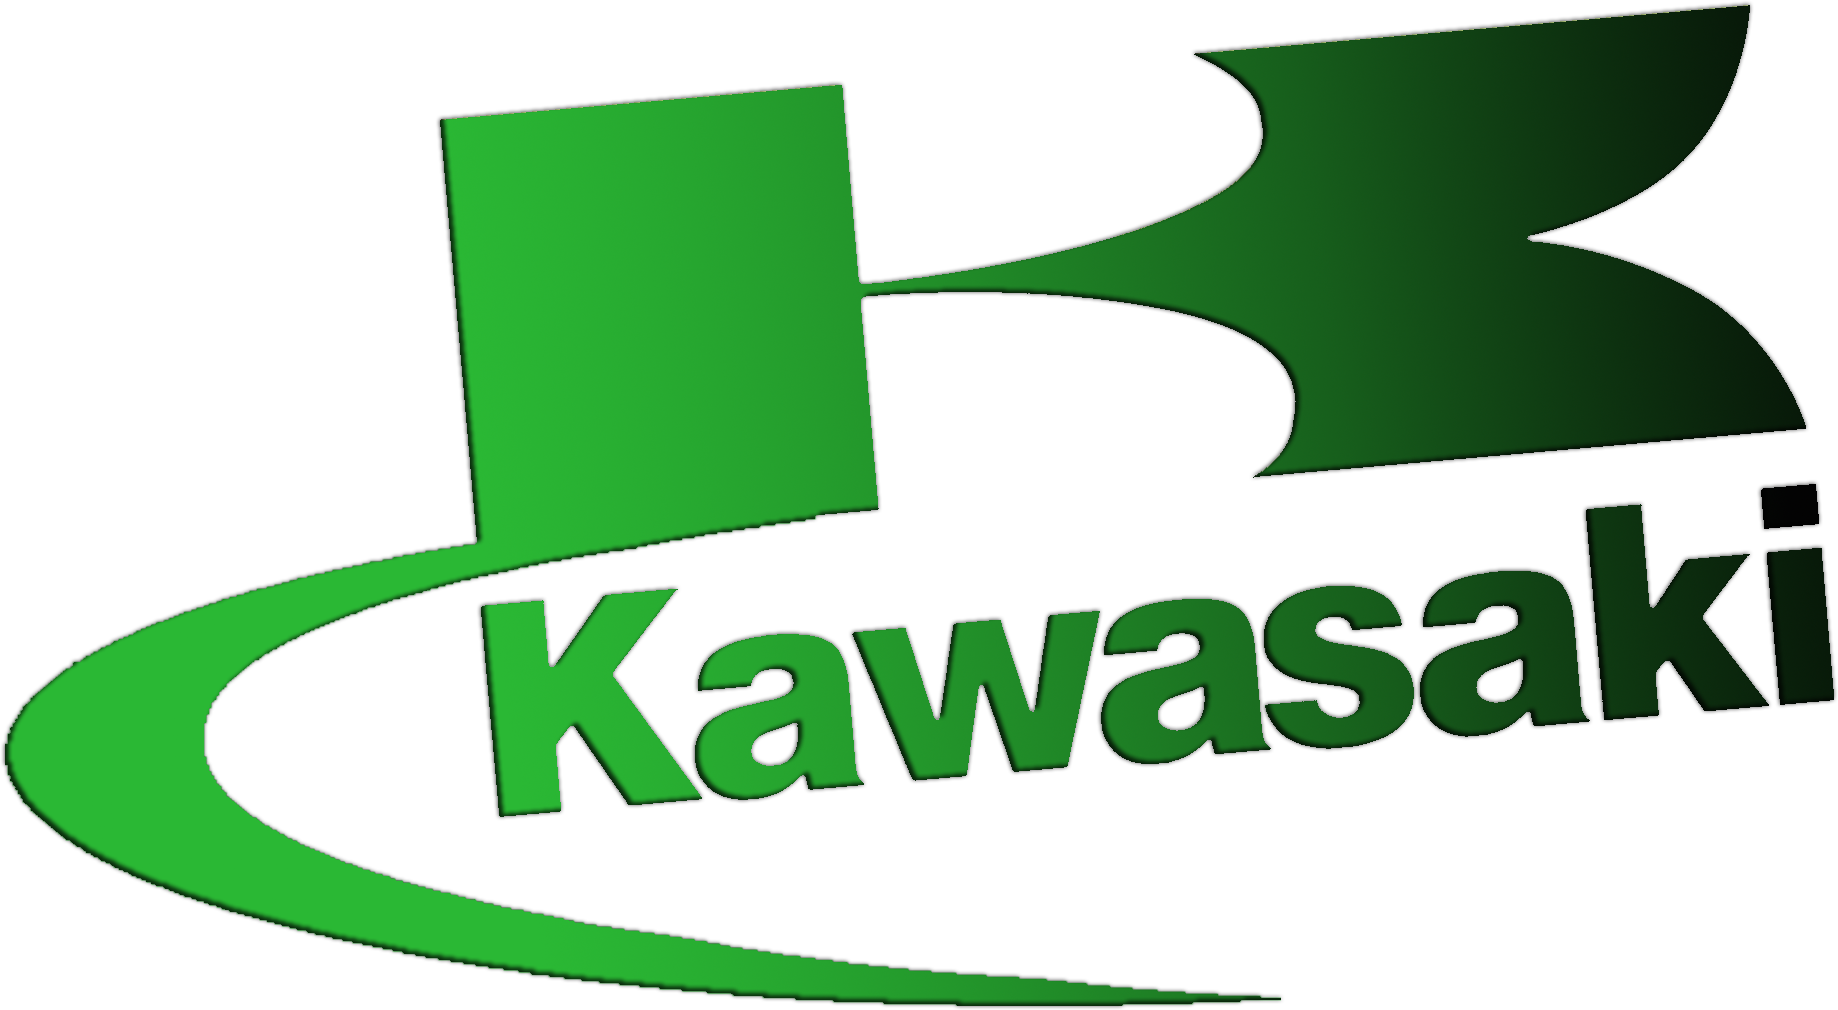 Kawasaki logo PNG image image